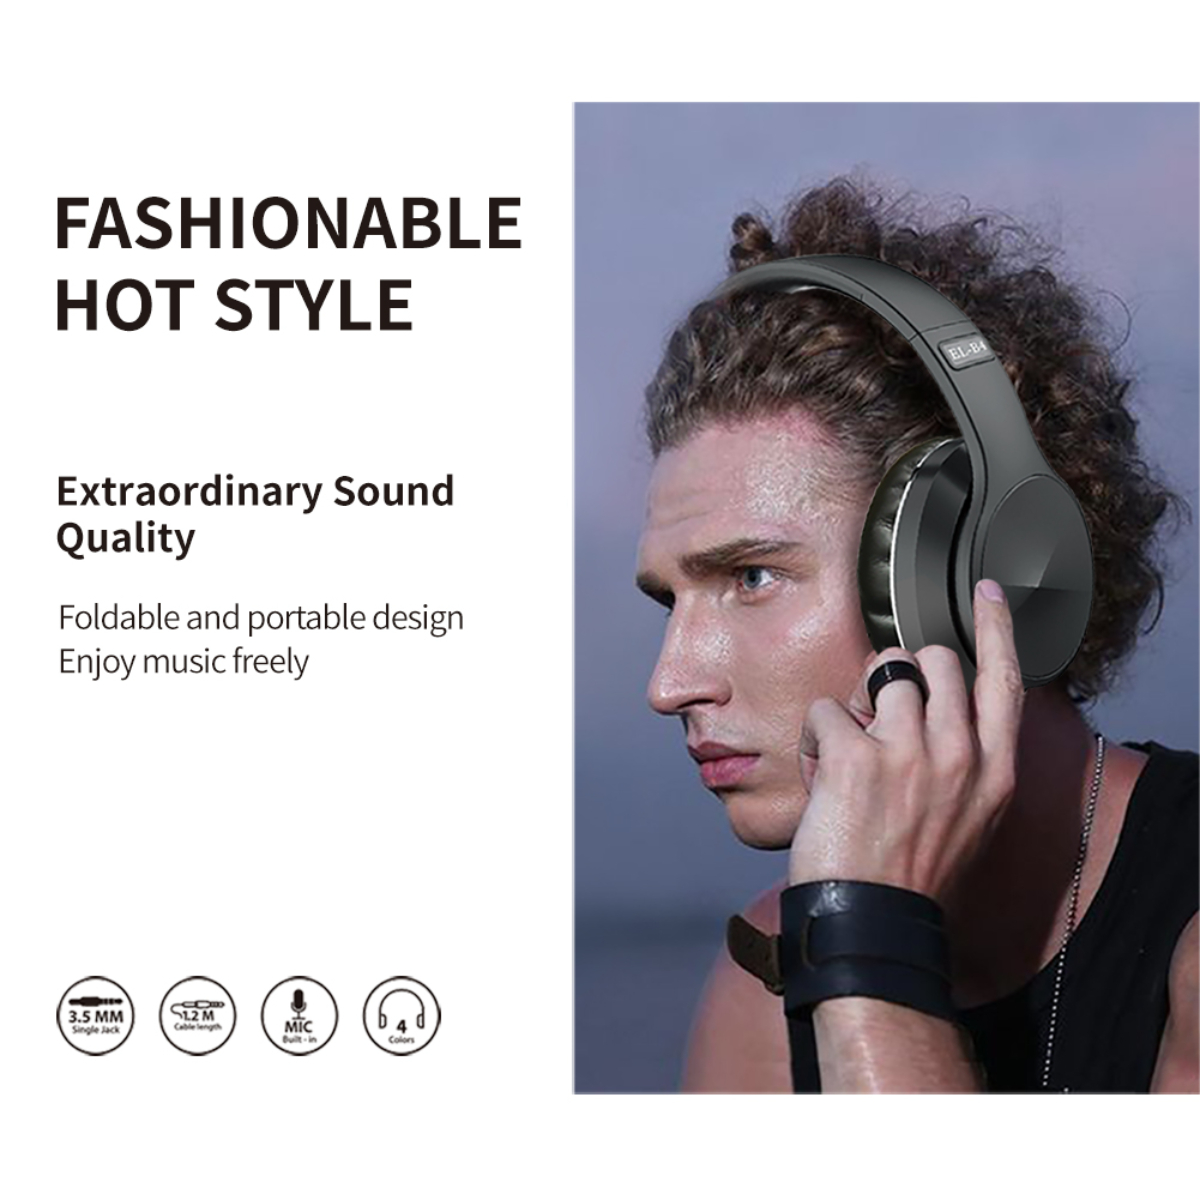 Kopfbügel - SYNTEK faltbar, Schwarzgold Bass-Stereoklang, Bluetooth-Headset Bluetooth kabelloses Bluetooth-Kopfhörer Over-ear Eisenhaltig